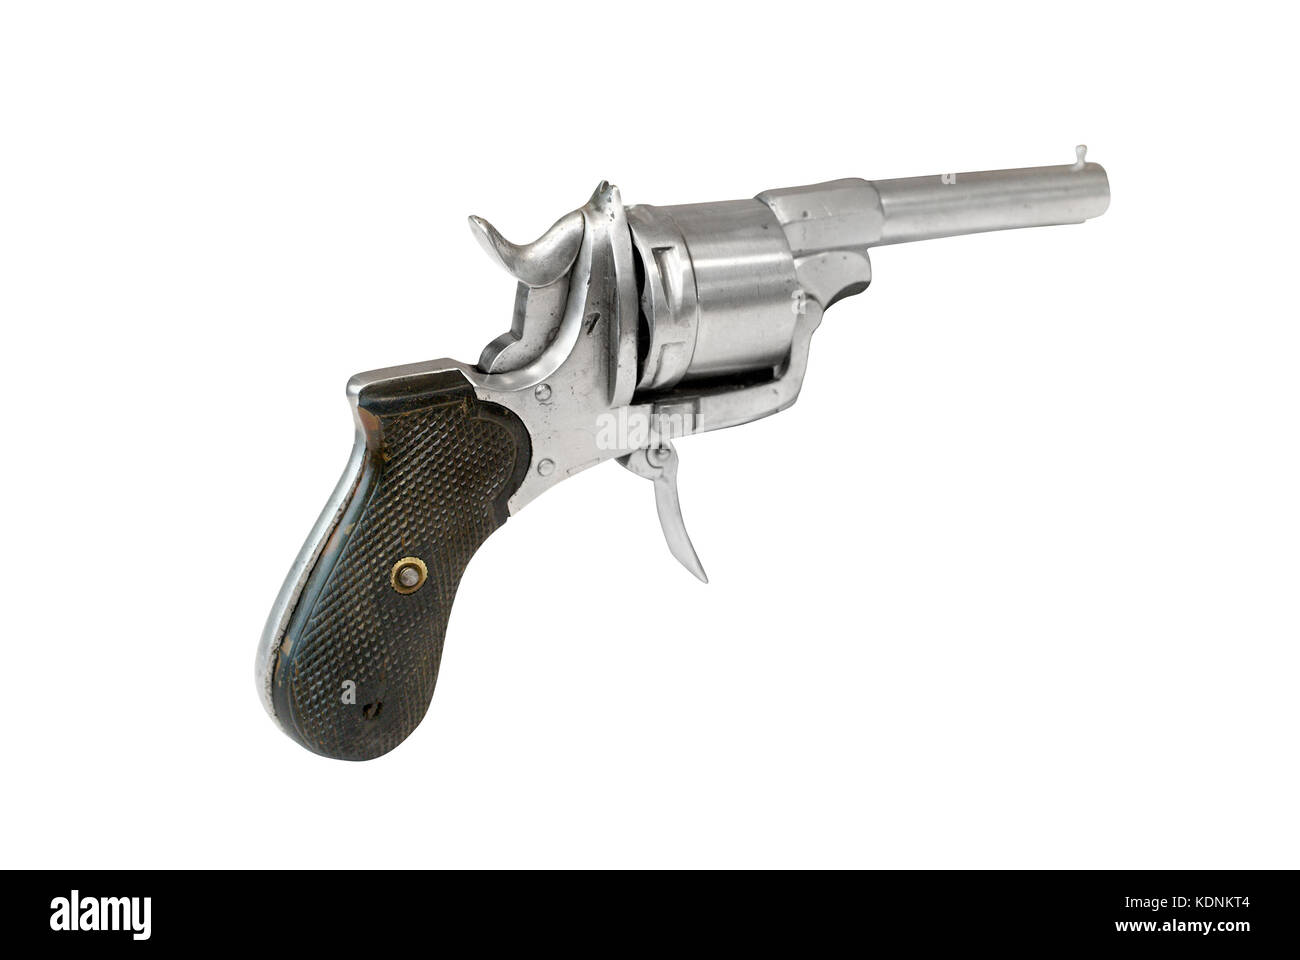 Revolver britannique (pisto) sous le nom de "British Bulldog' a été très populaire dans les coins éloignés de la British empireat la fin du xixe siècle. Banque D'Images